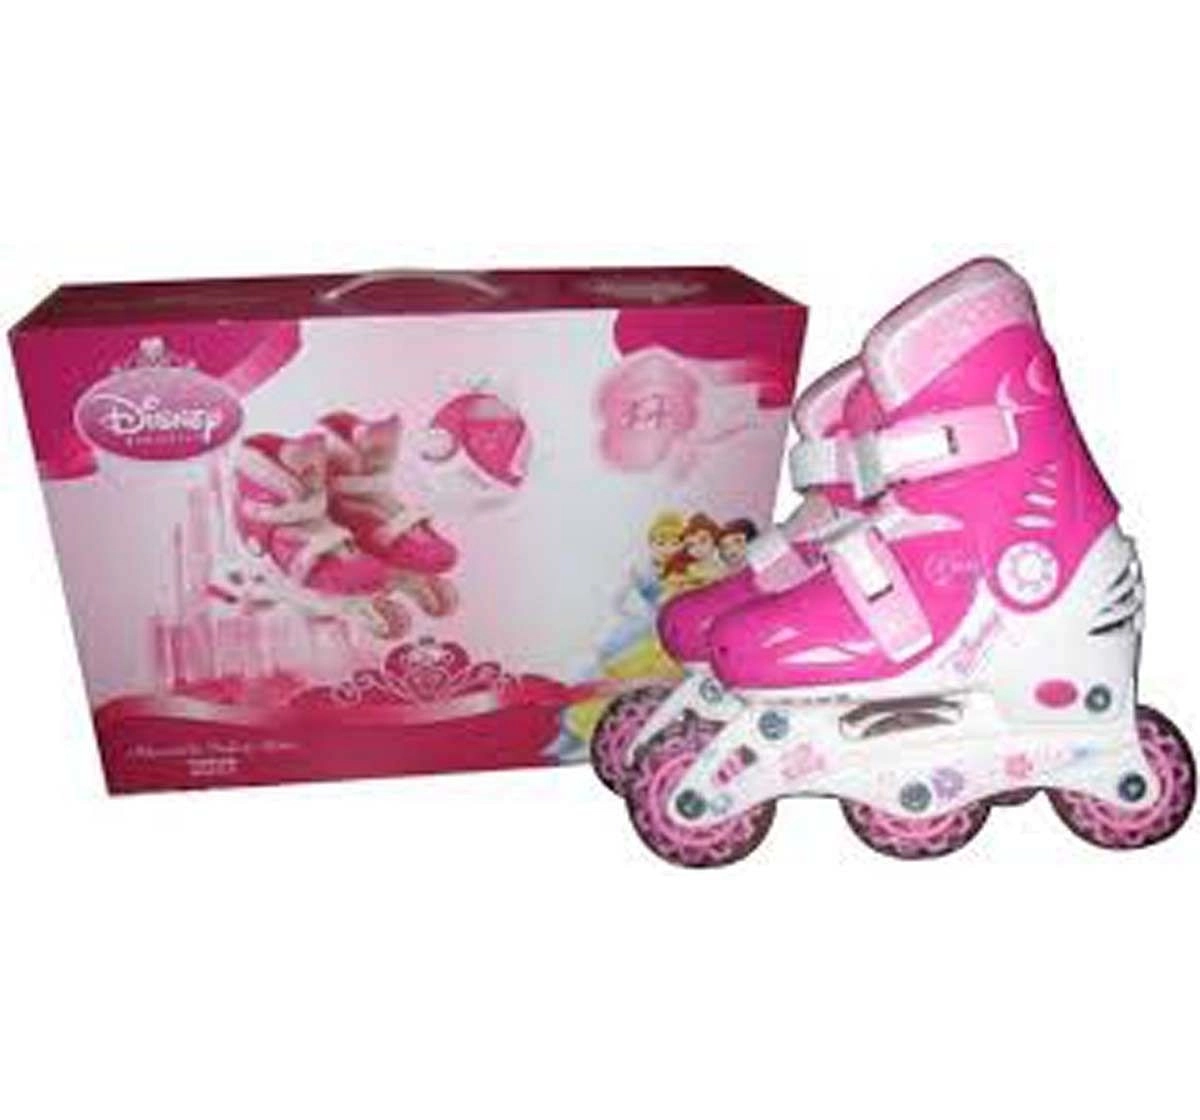 Disney Princess Inline Skate Combo Set (Skates and Skateboards) for Kids age 3Y+ 